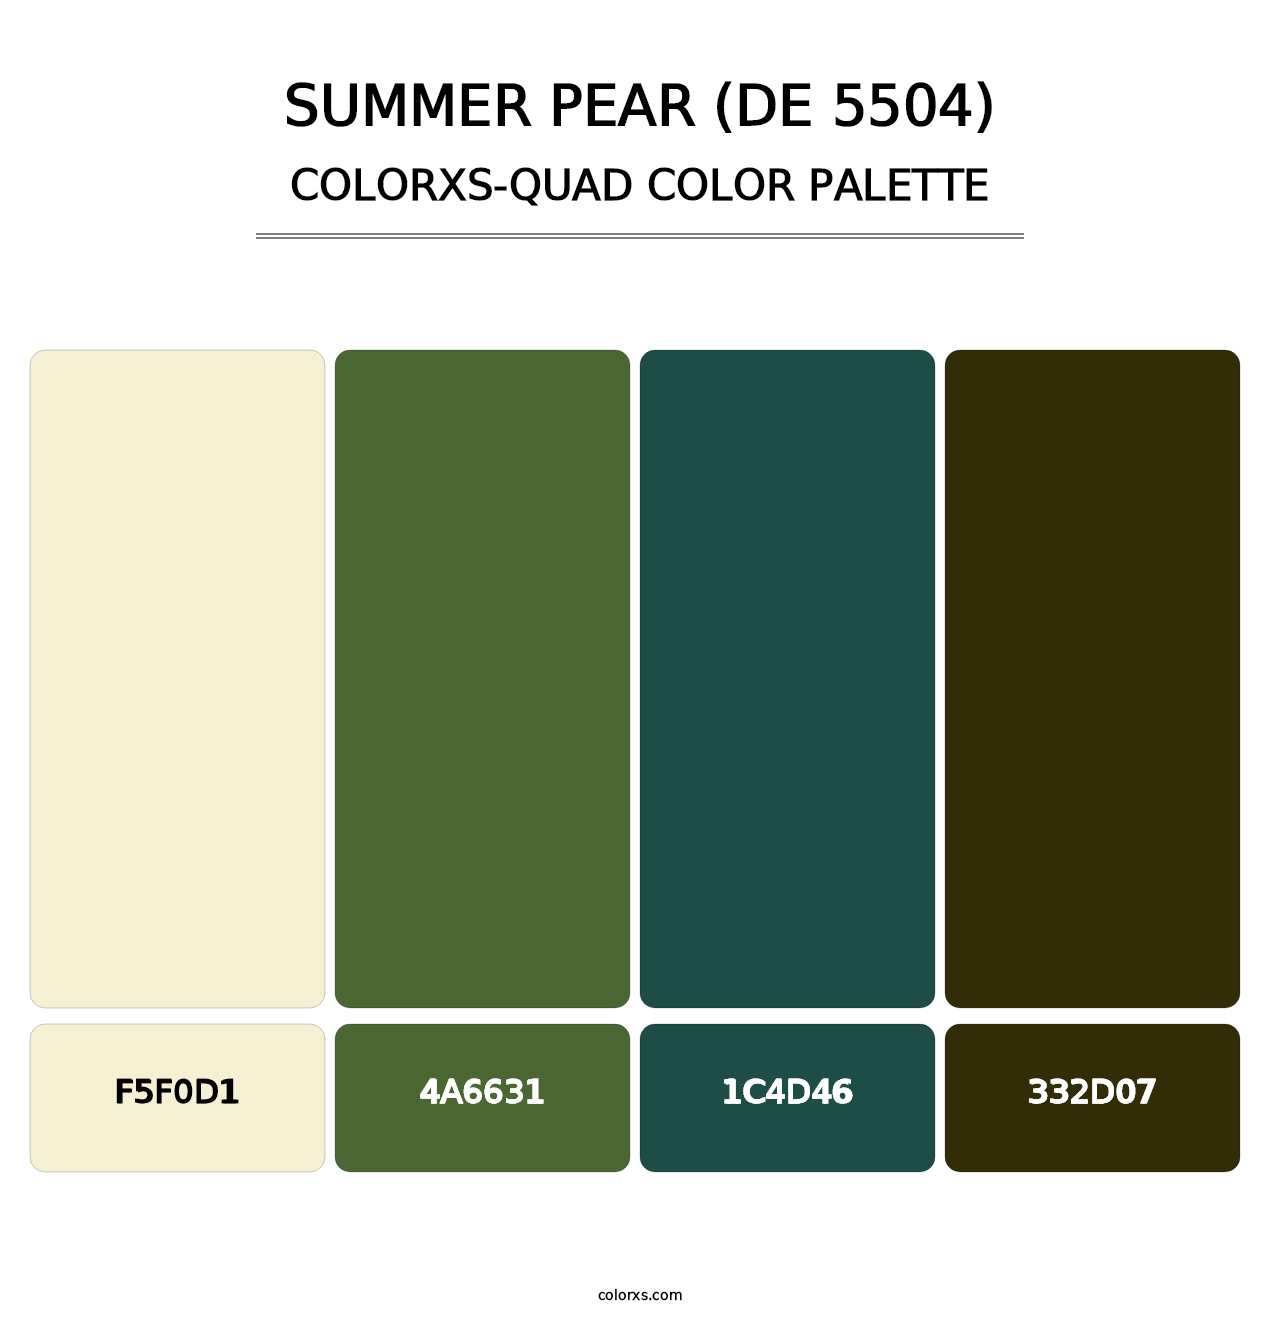 Summer Pear (DE 5504) - Colorxs Quad Palette